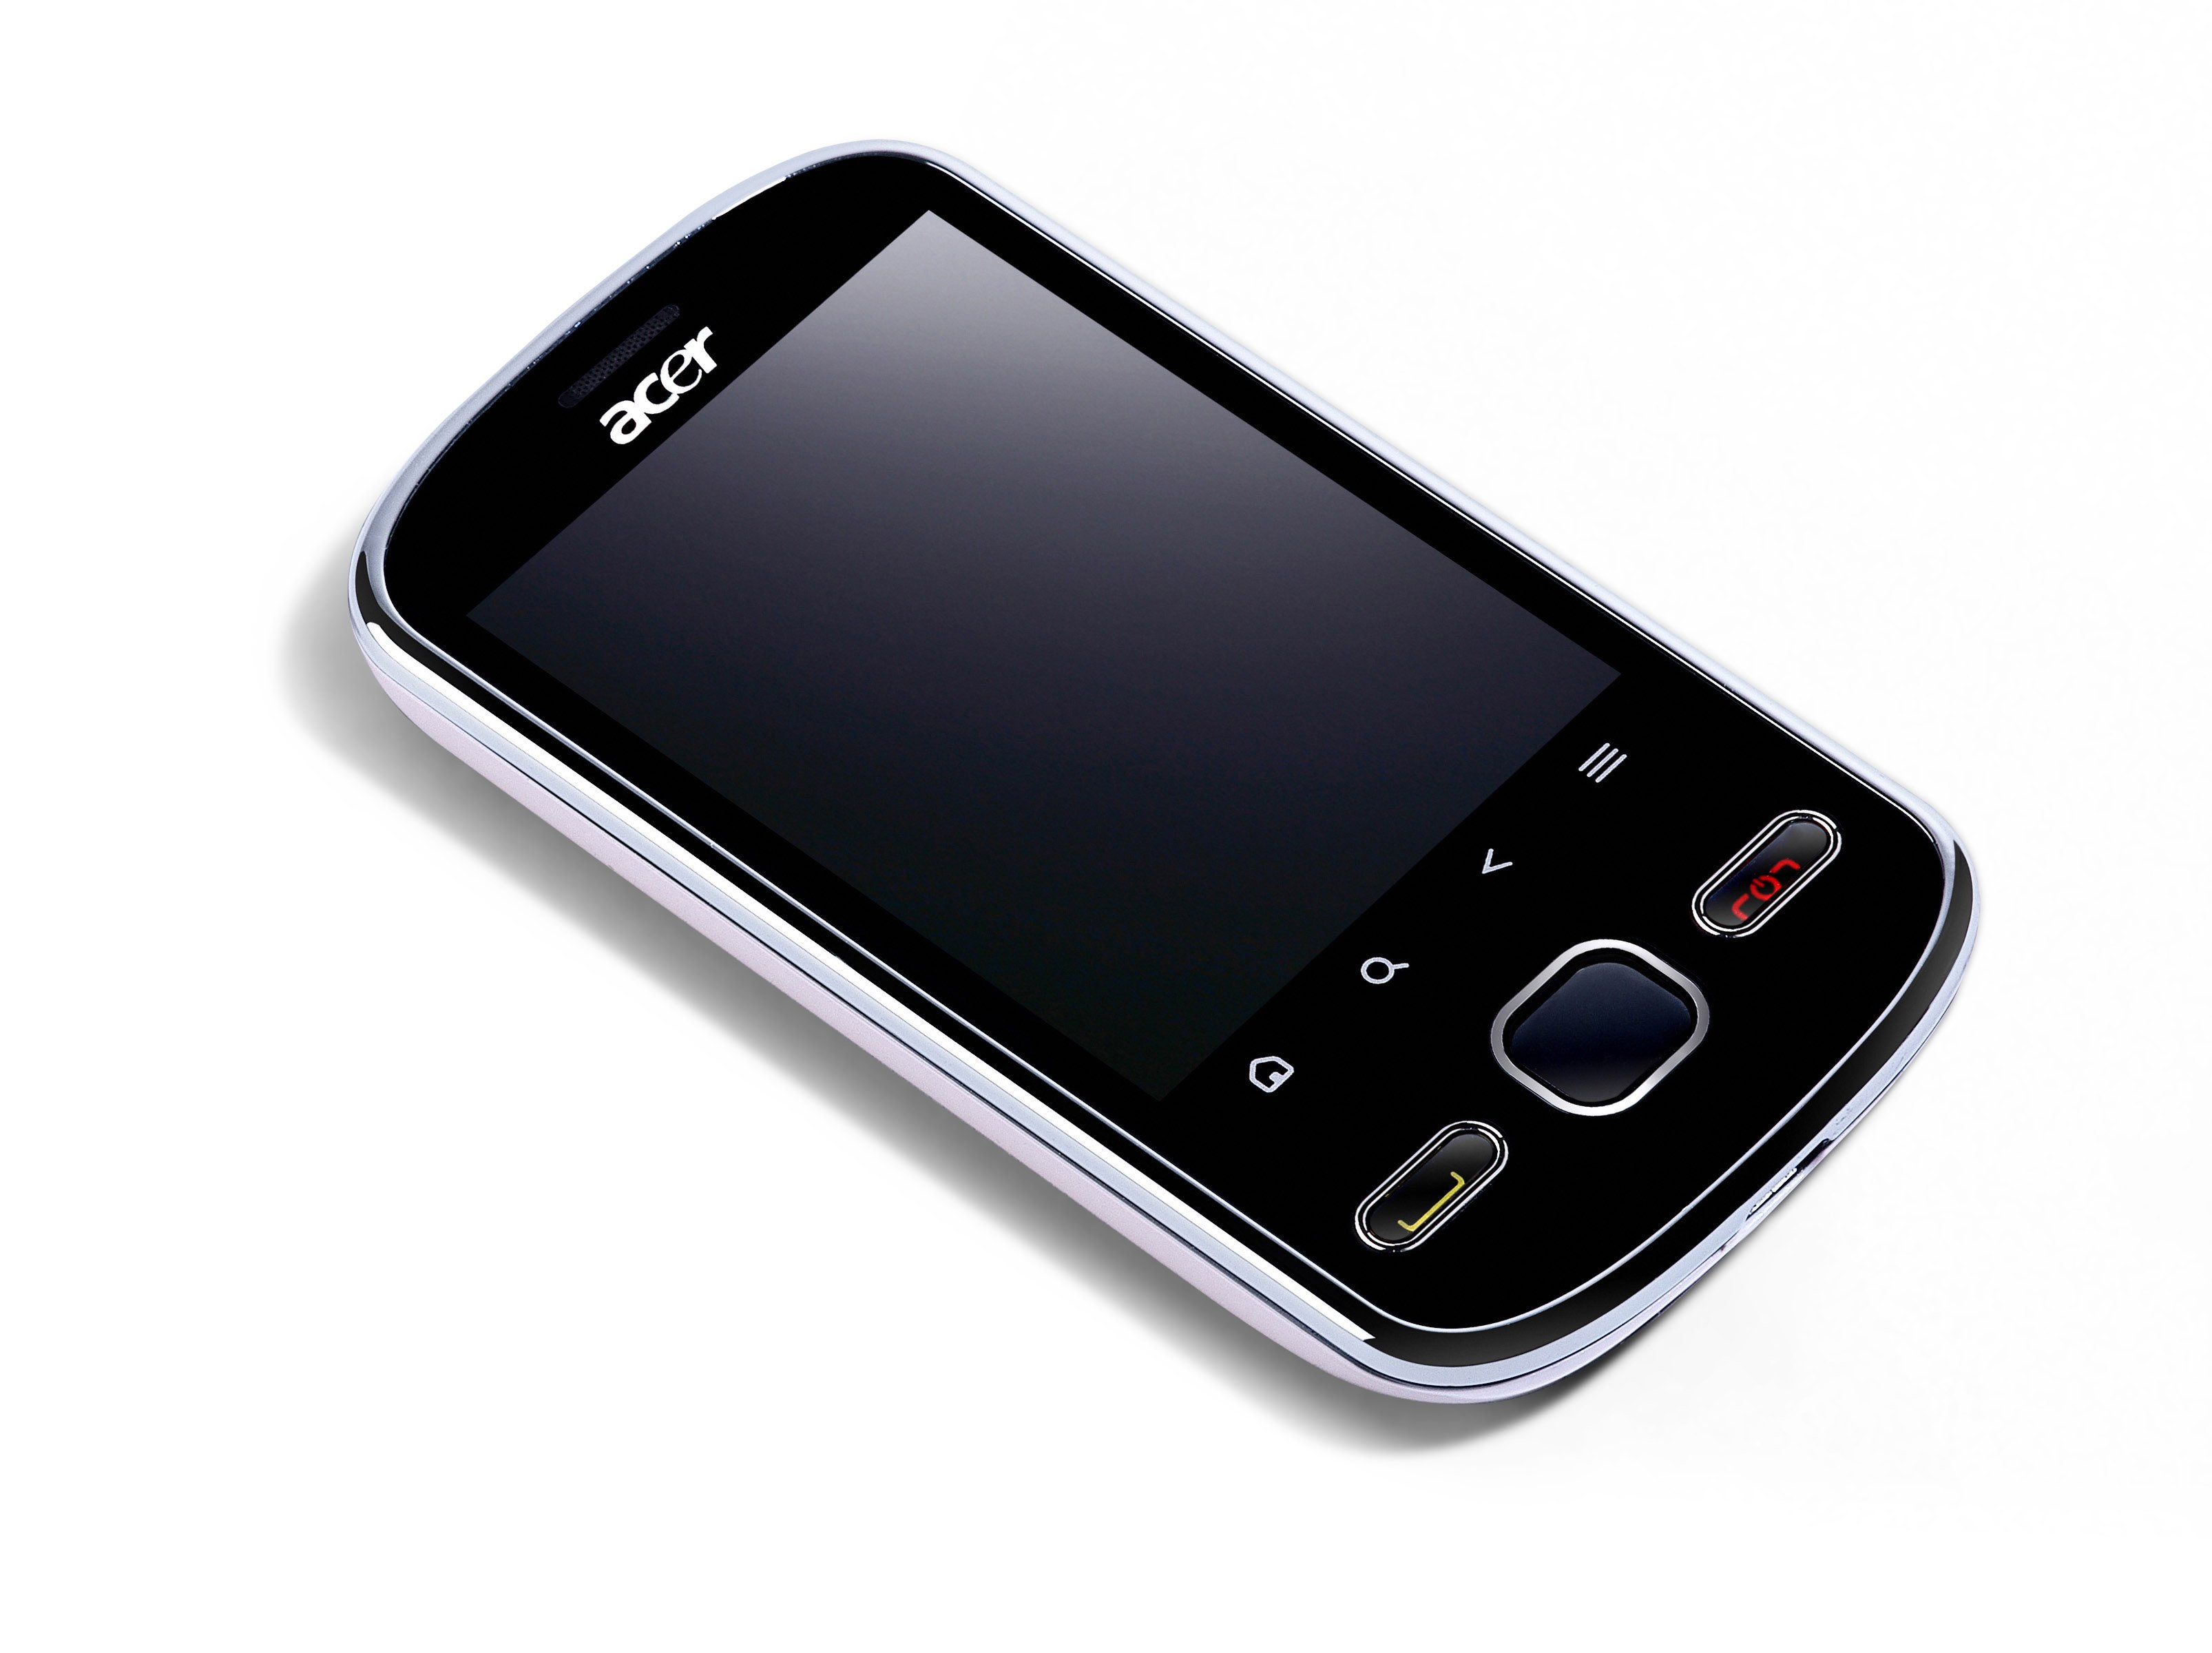 Дешевые телефоны краснодар. Acer e110 BETOUCH тачскрин. Fly e110. Смартфоны с сенсорными кнопками. Сенсорный телефон с двумя кнопками.